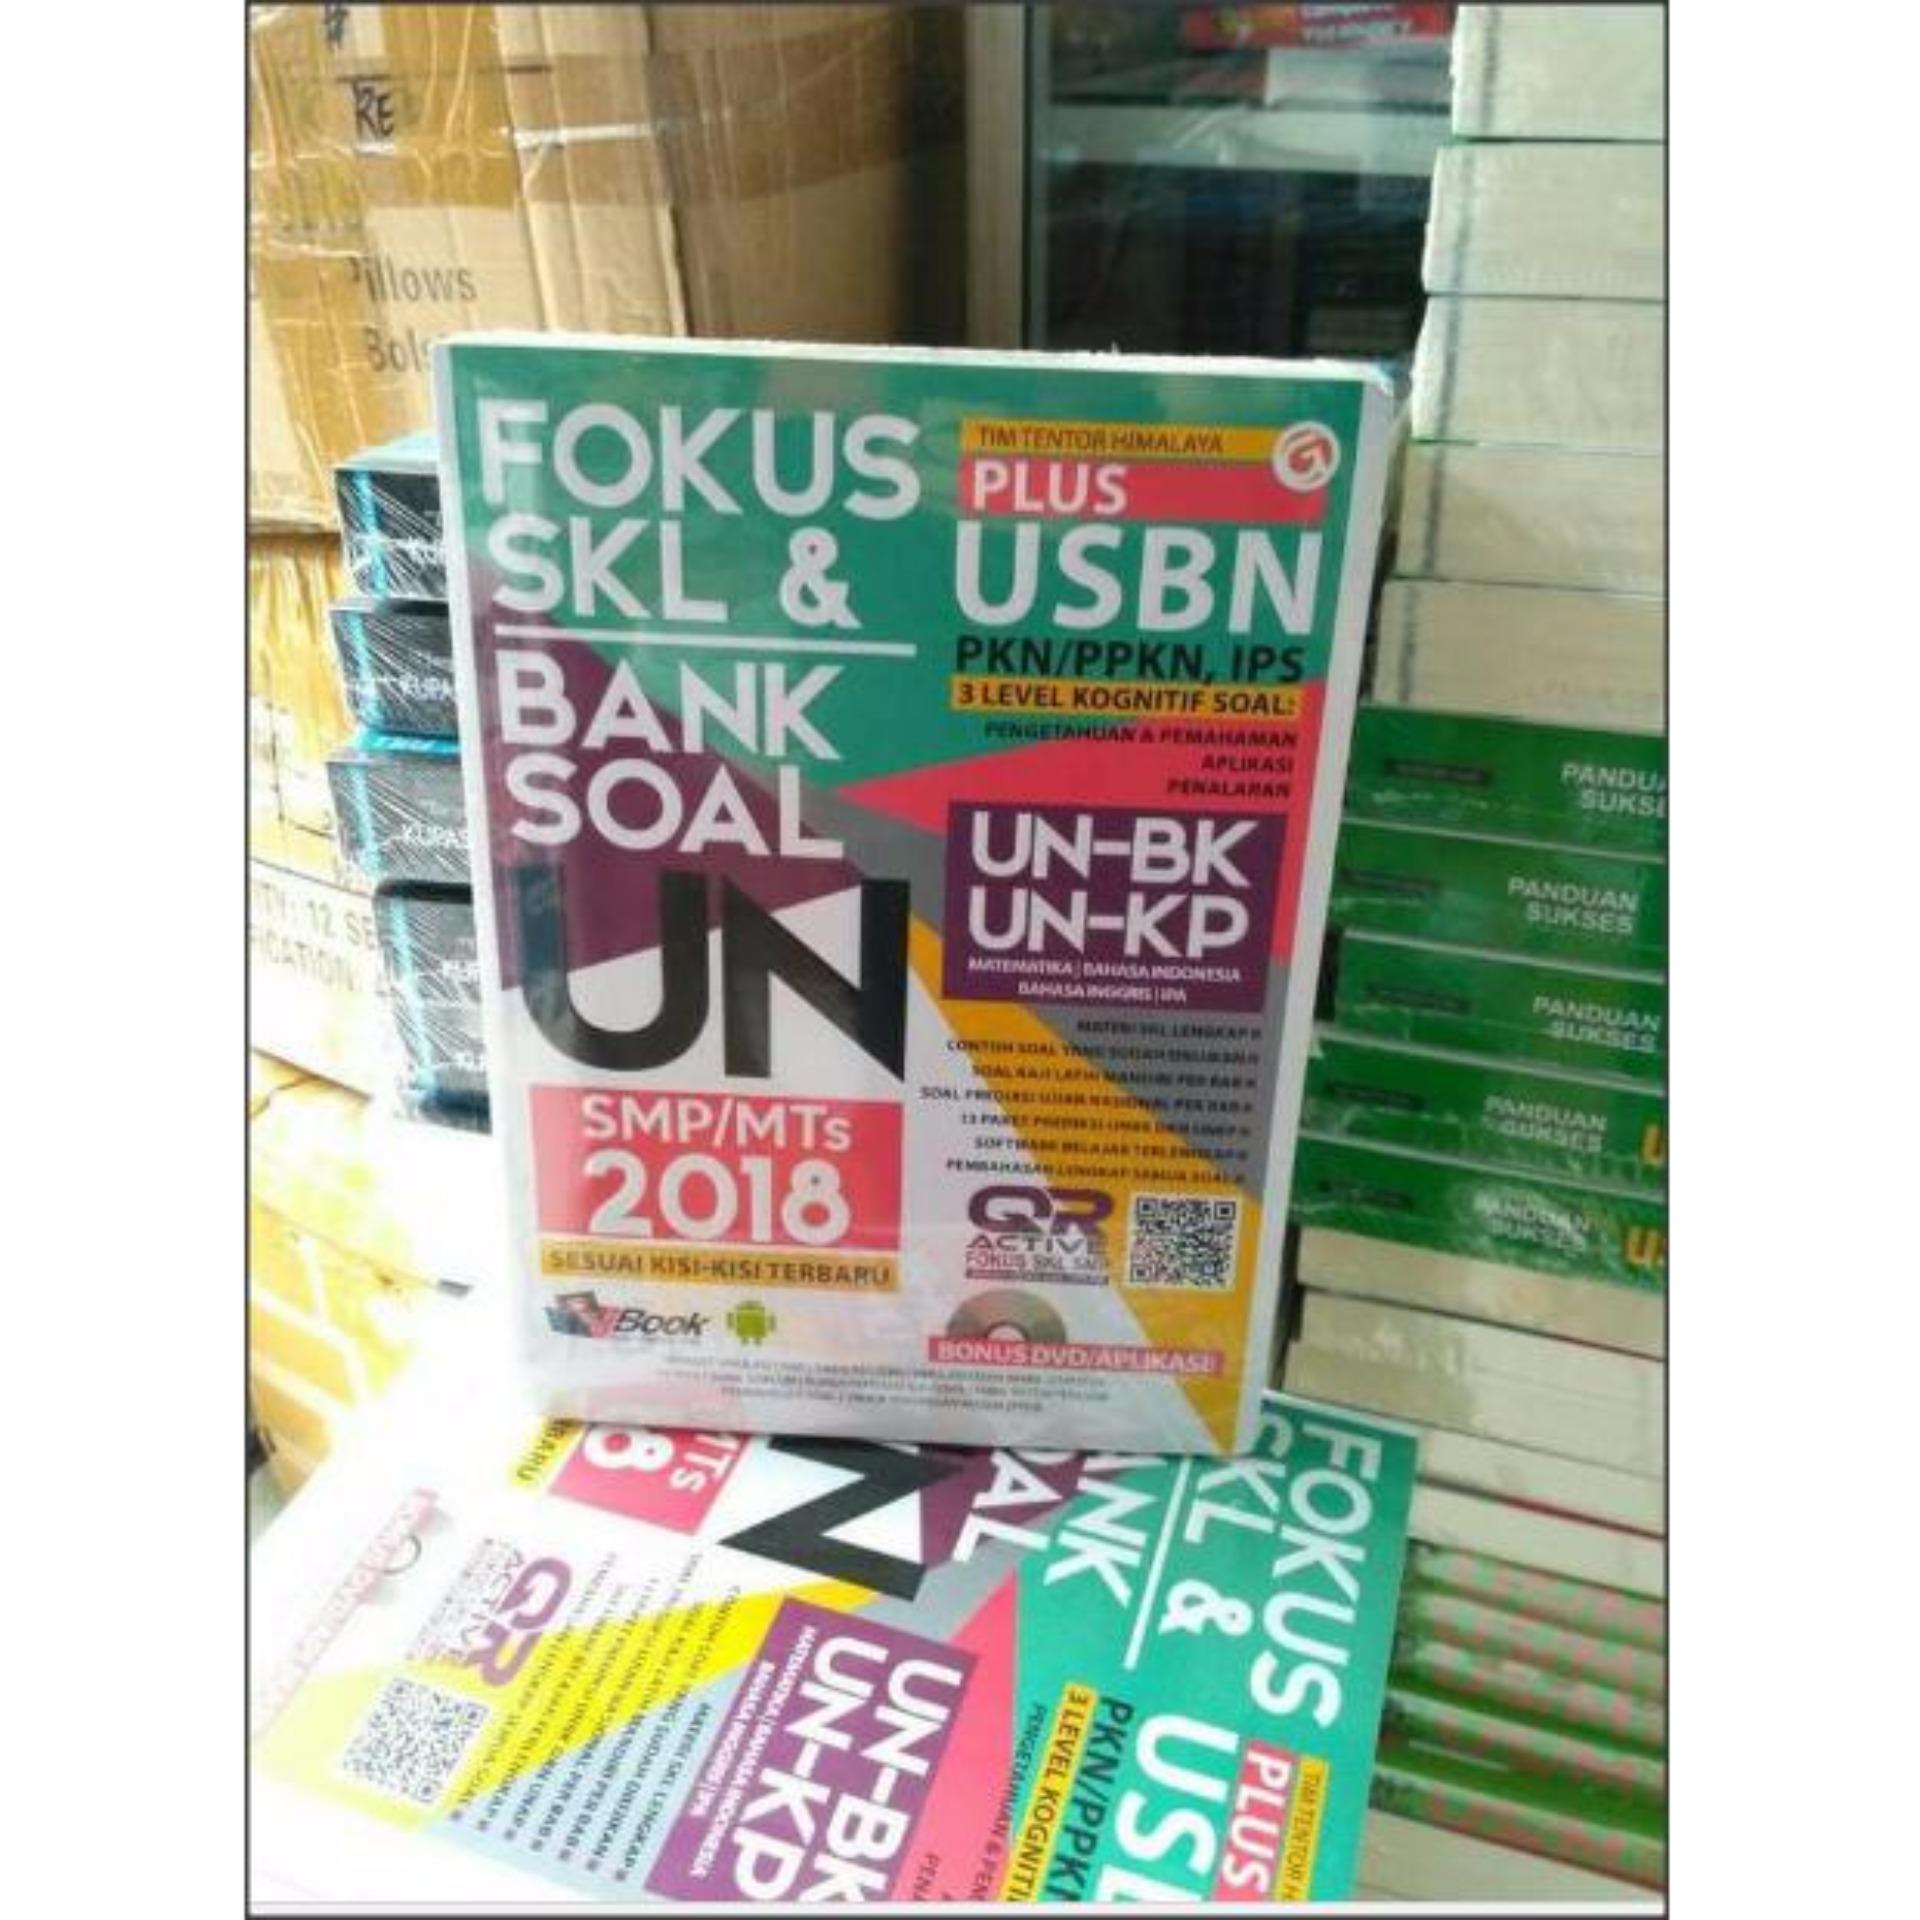 Harga preferensial Fokus SKL Dan Bank Soal UN SMP MTS 2018 Plus USBN beli sekarang